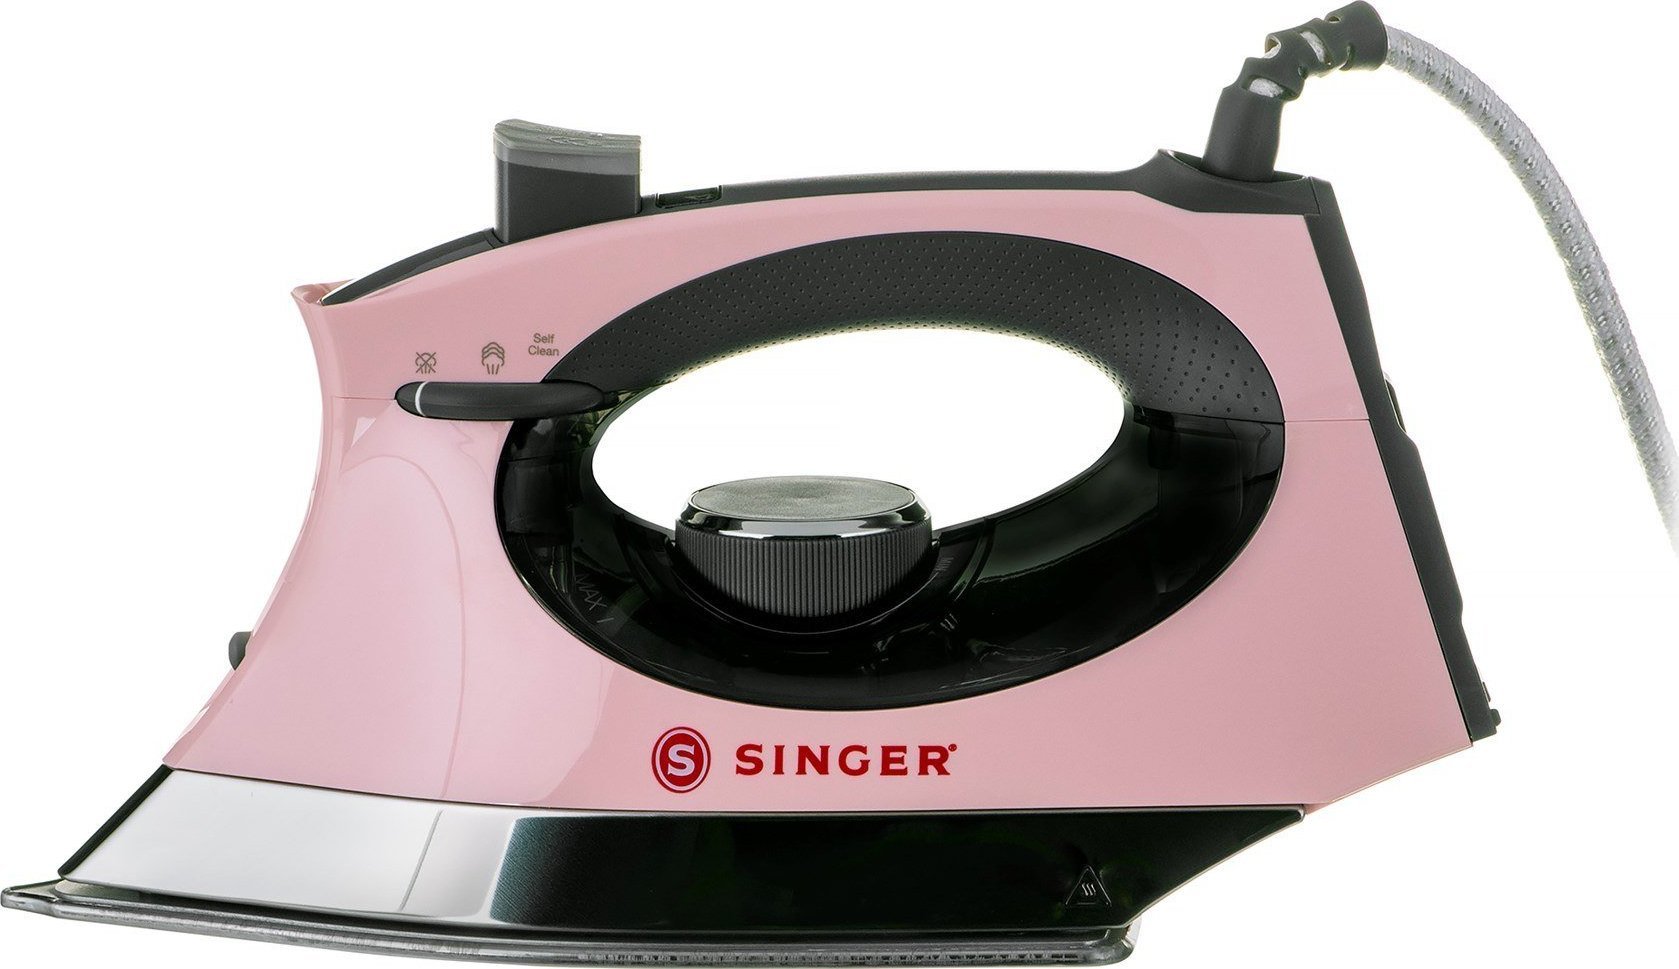 SINGER Steam Craft Steam iron Stainless Steel soleplate 2600 W pink-grey Gludeklis